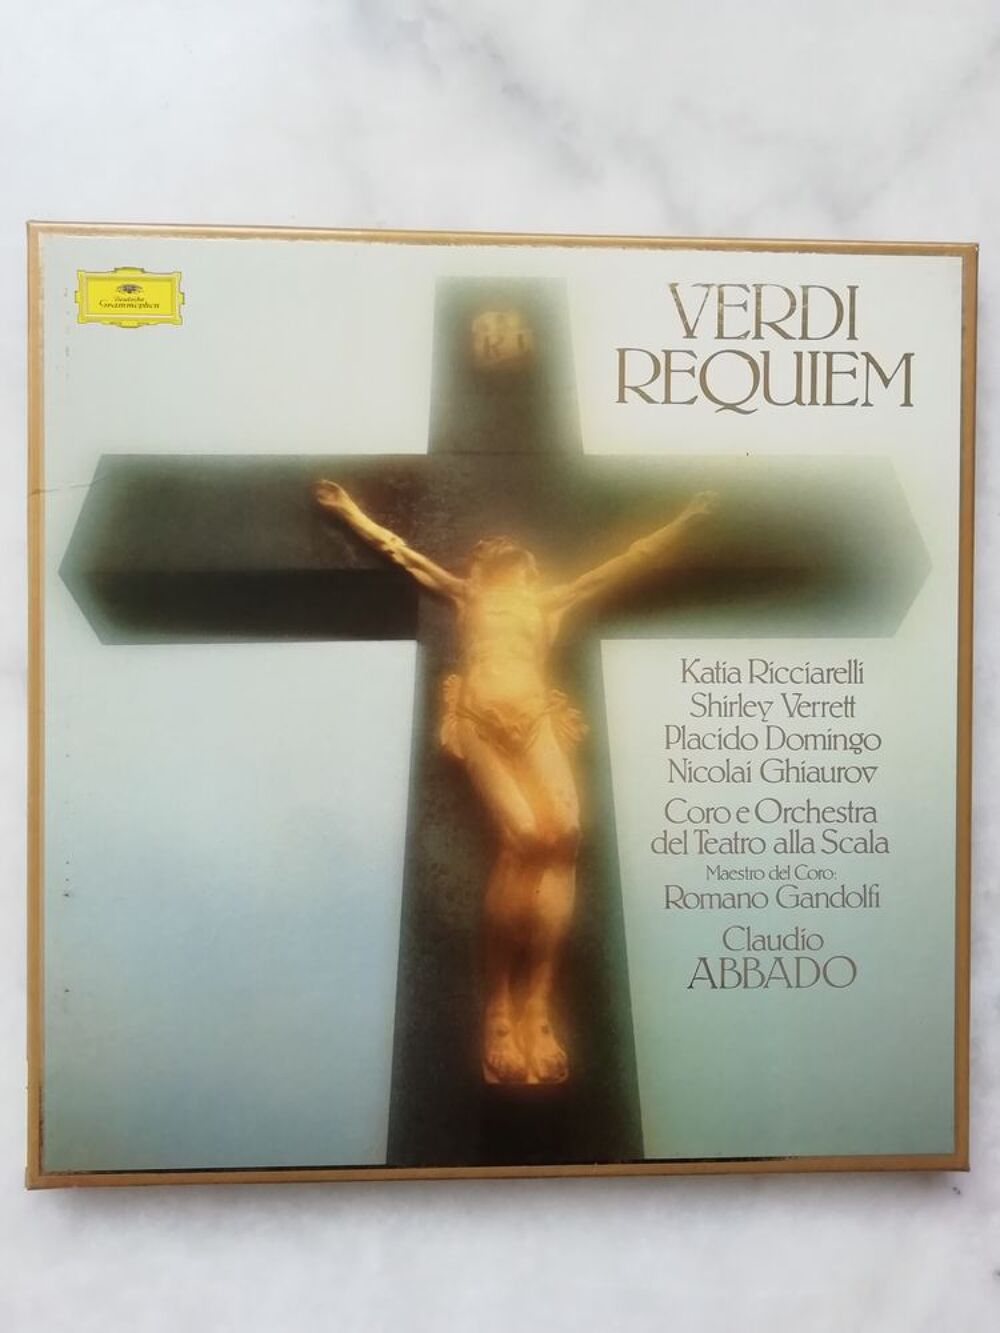 Requiem de Verdi CD et vinyles